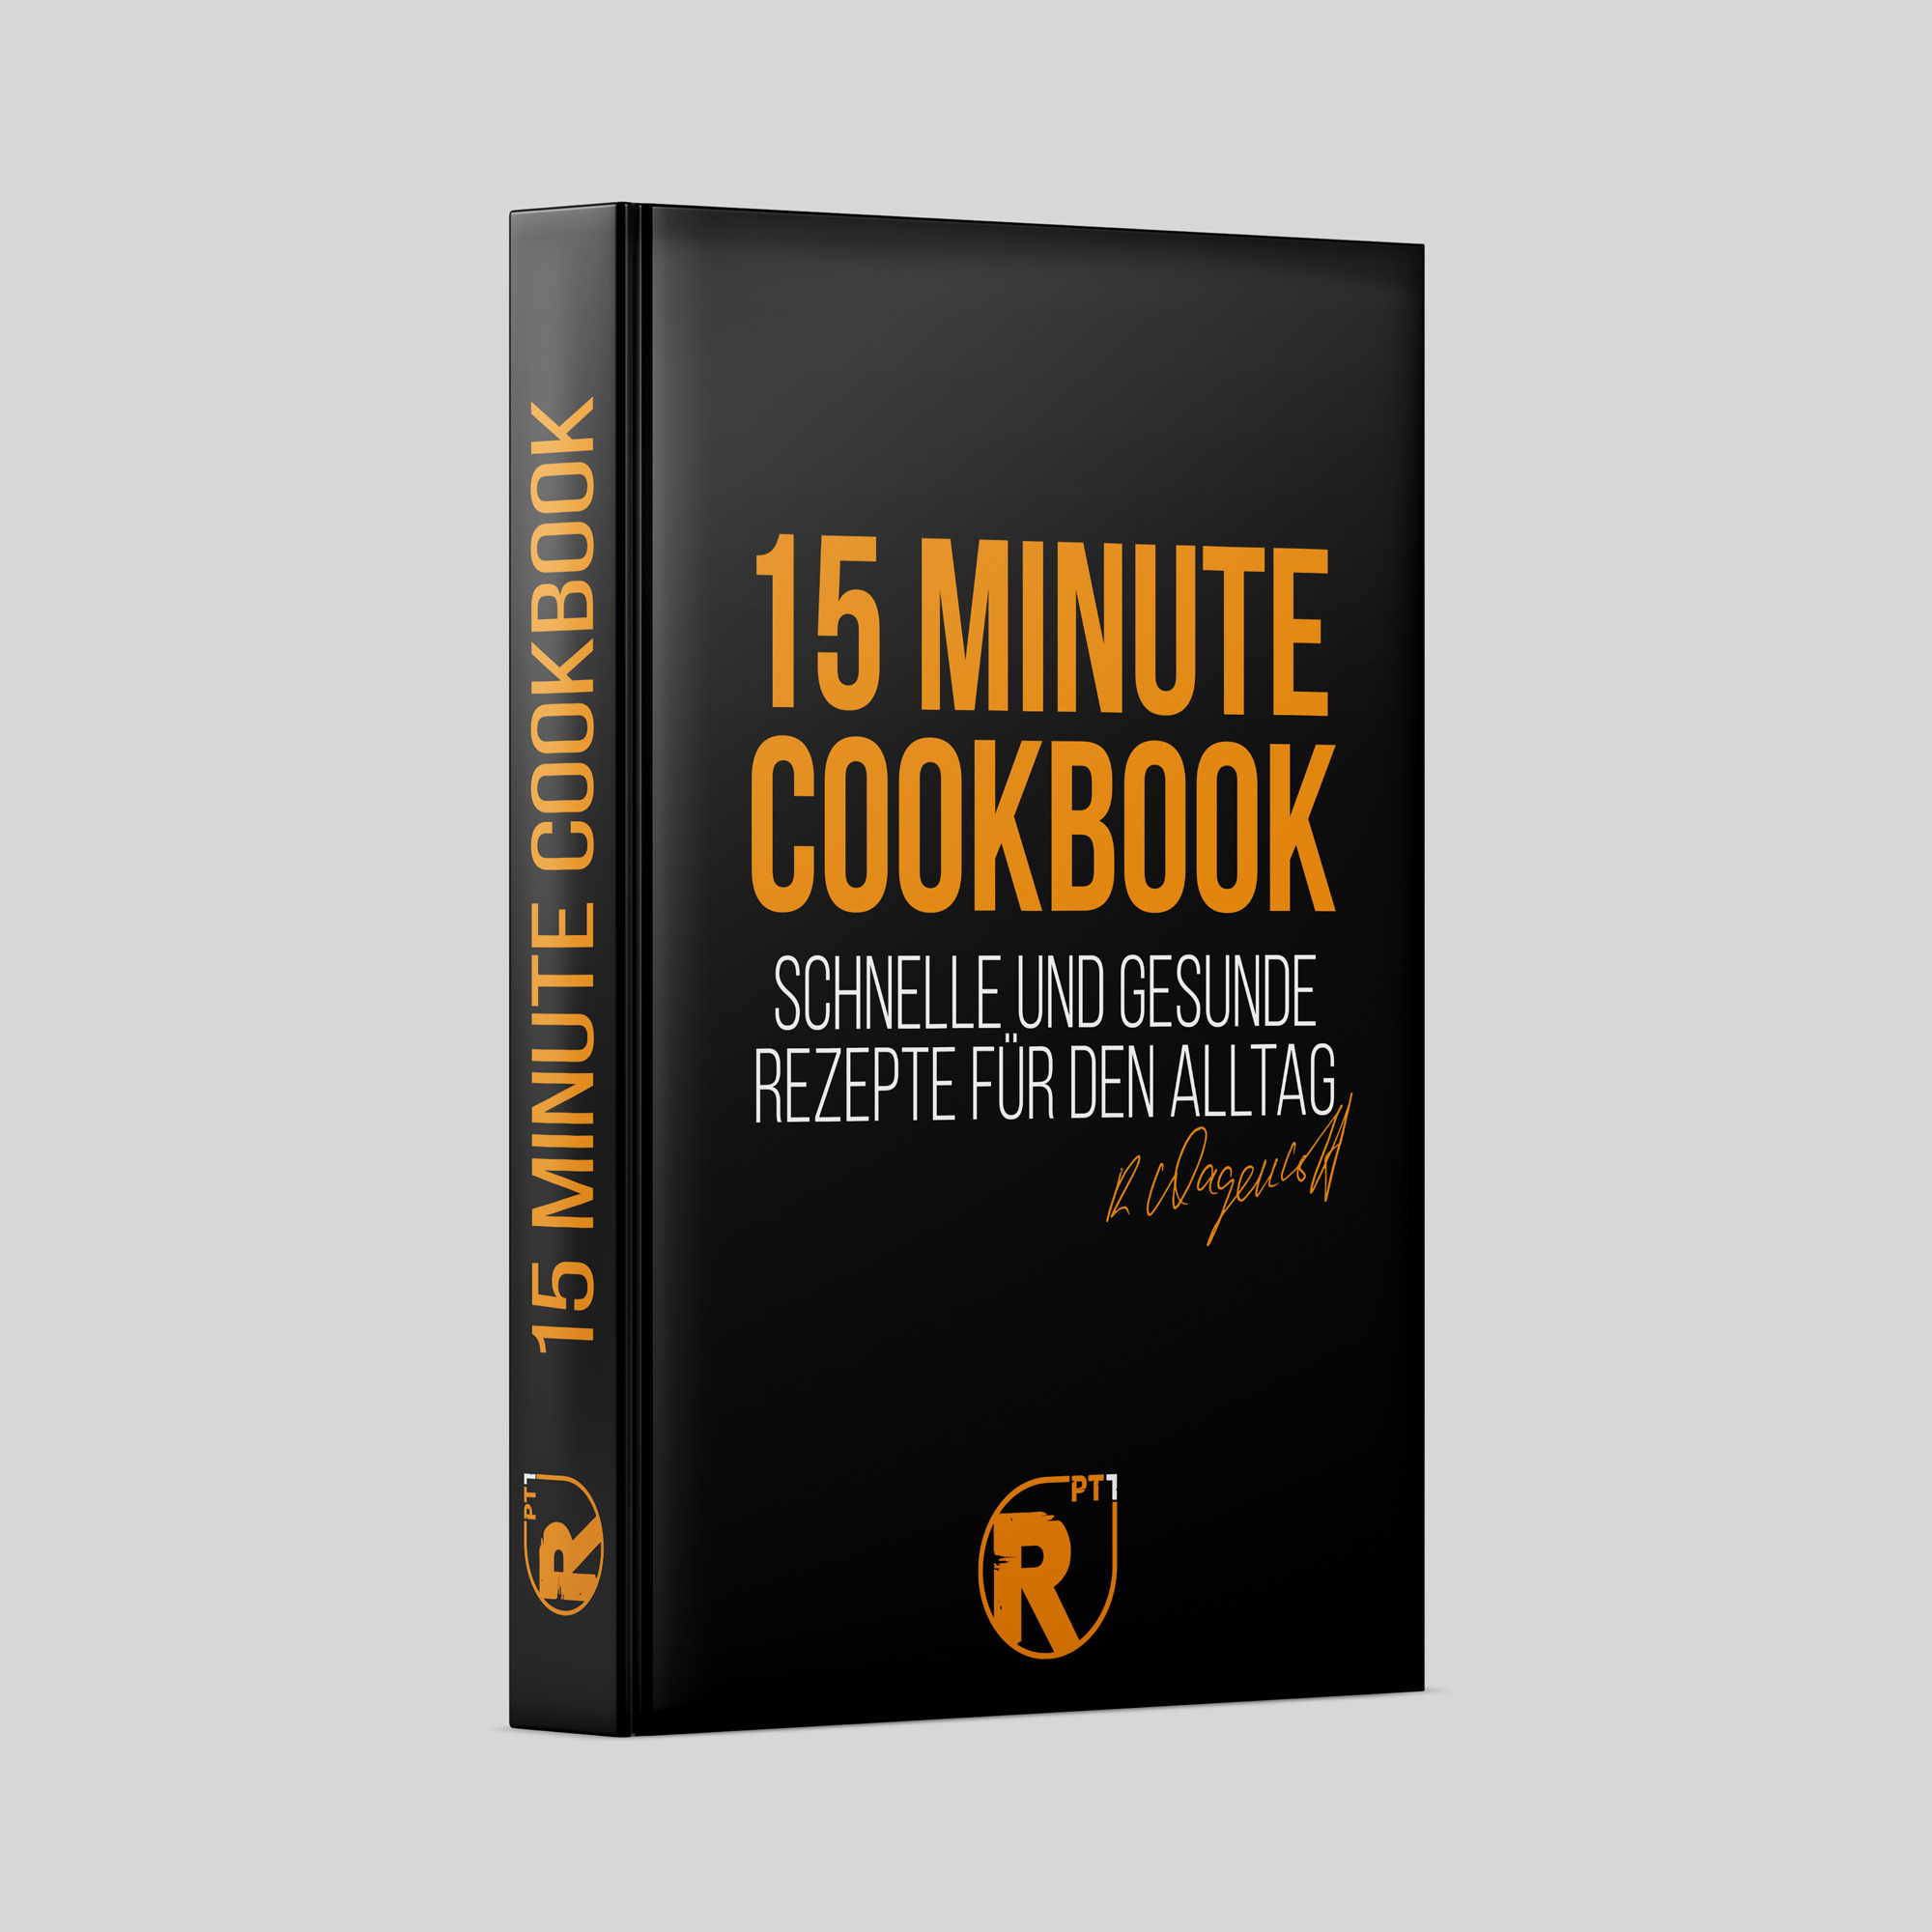 15 min. COOKBOOK by RPT1